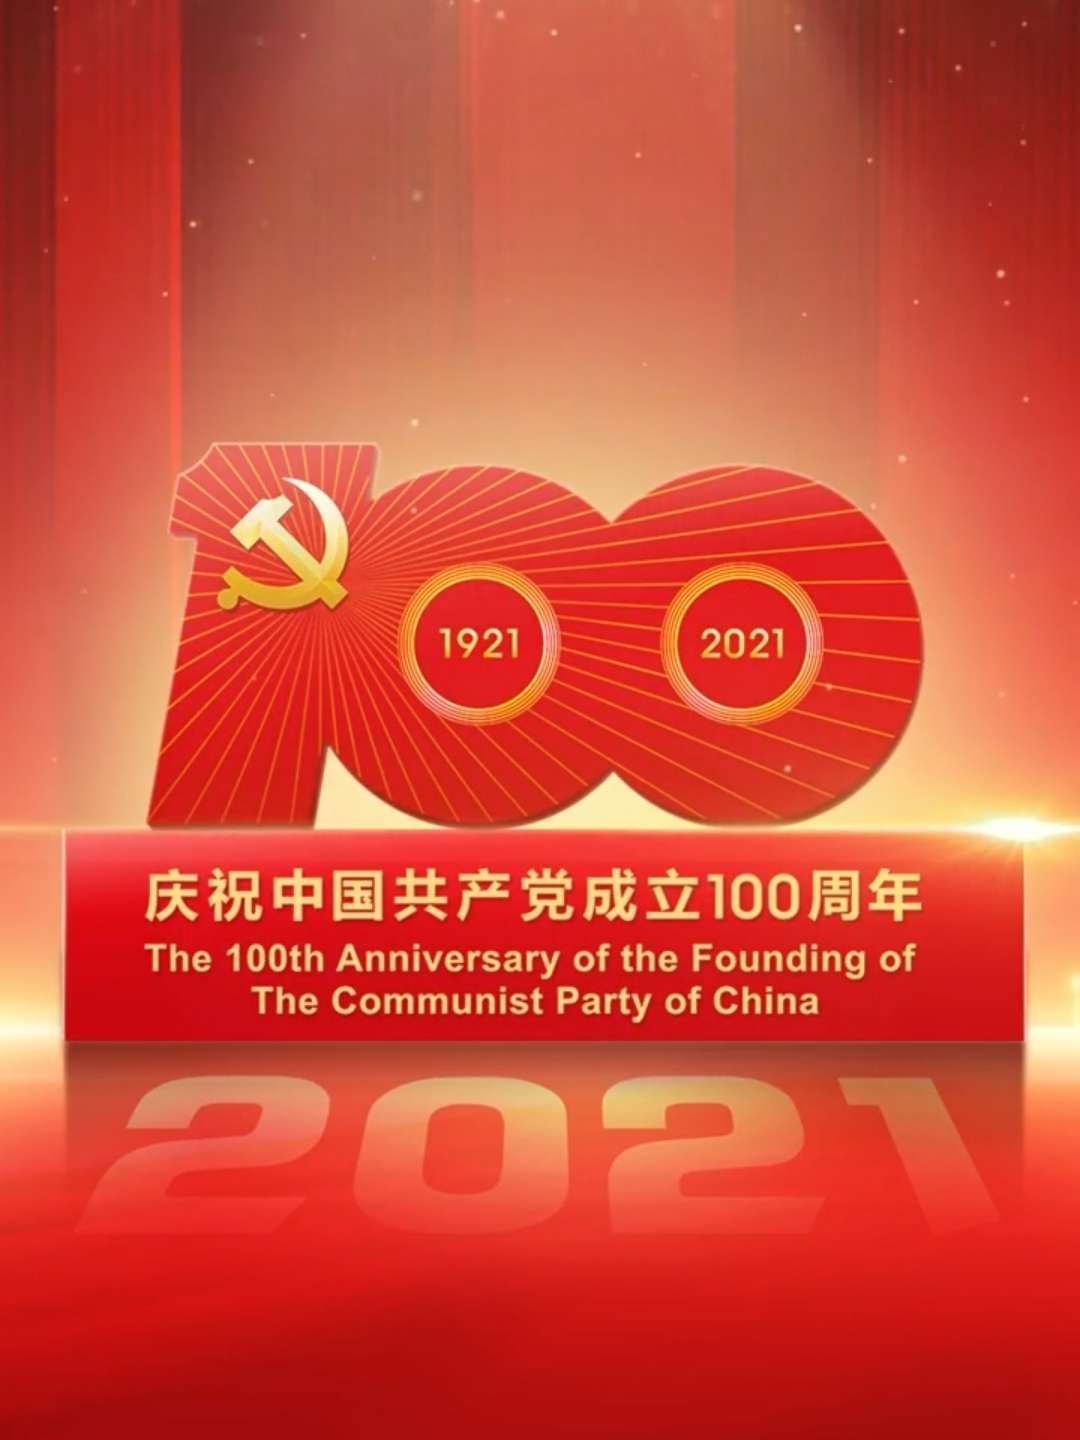 中国共产党成立100周年#1921-2021